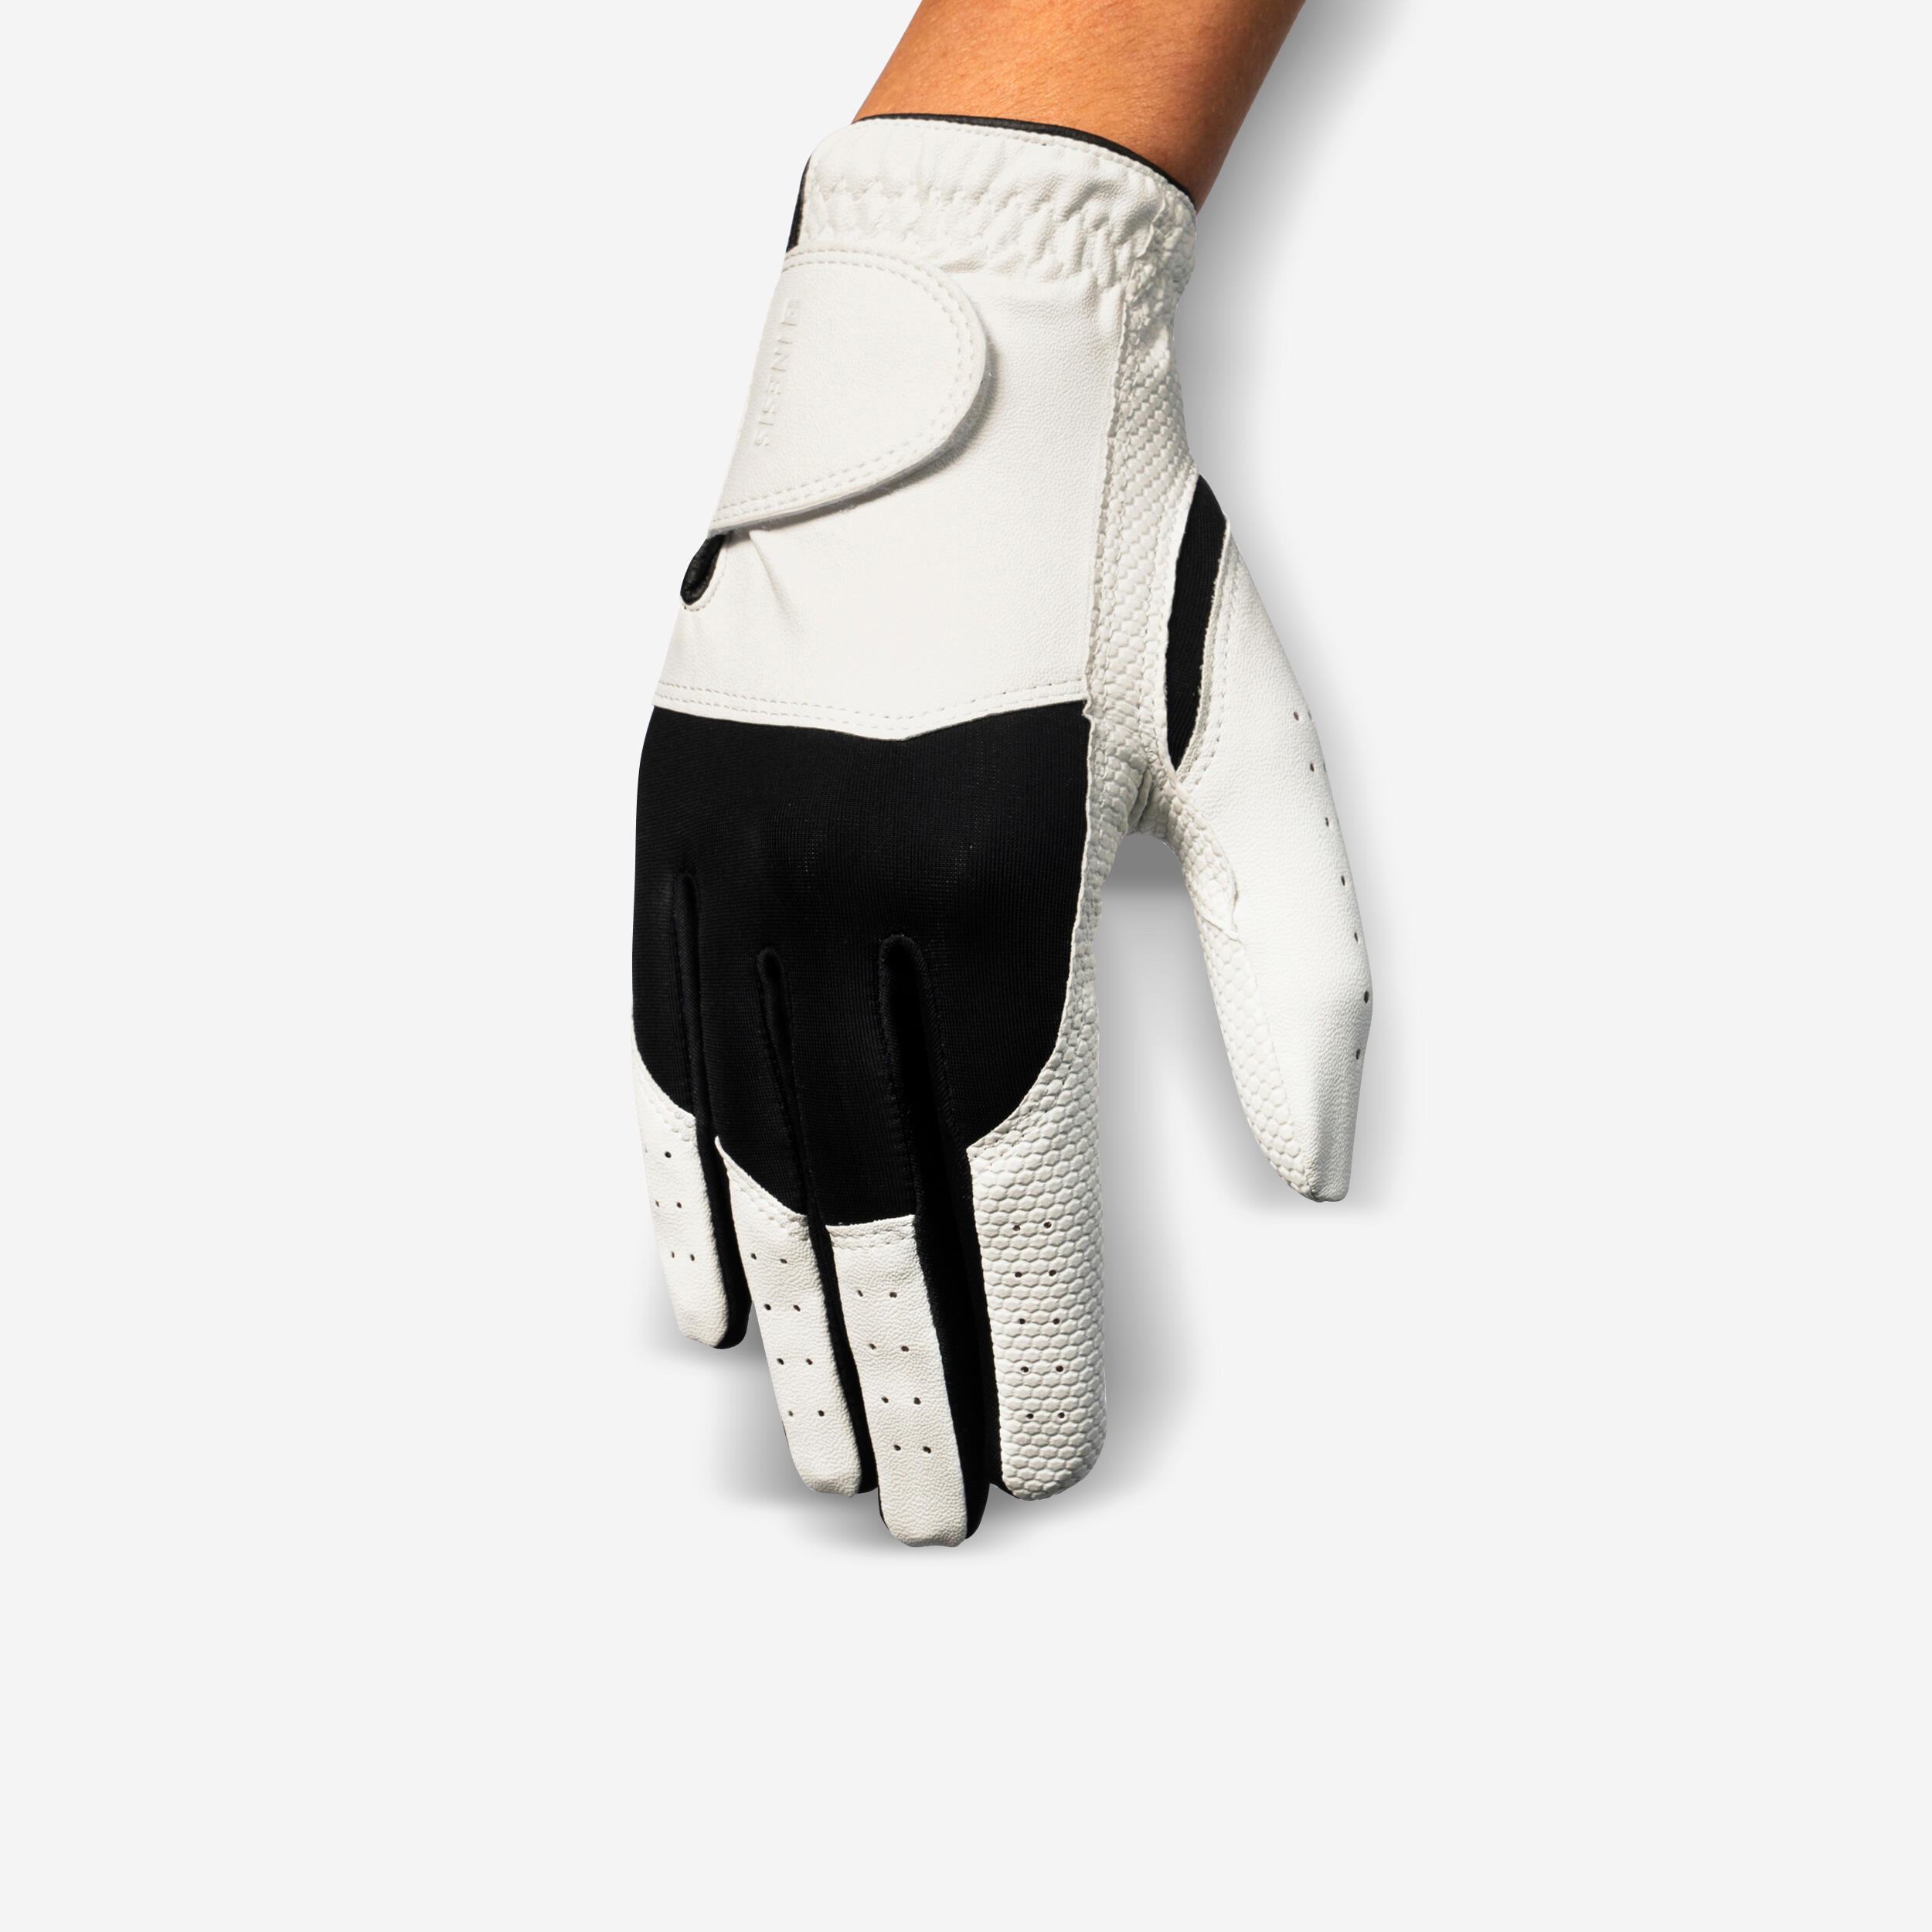 Women’s LH Golf Glove - Resistance 100 White/Black